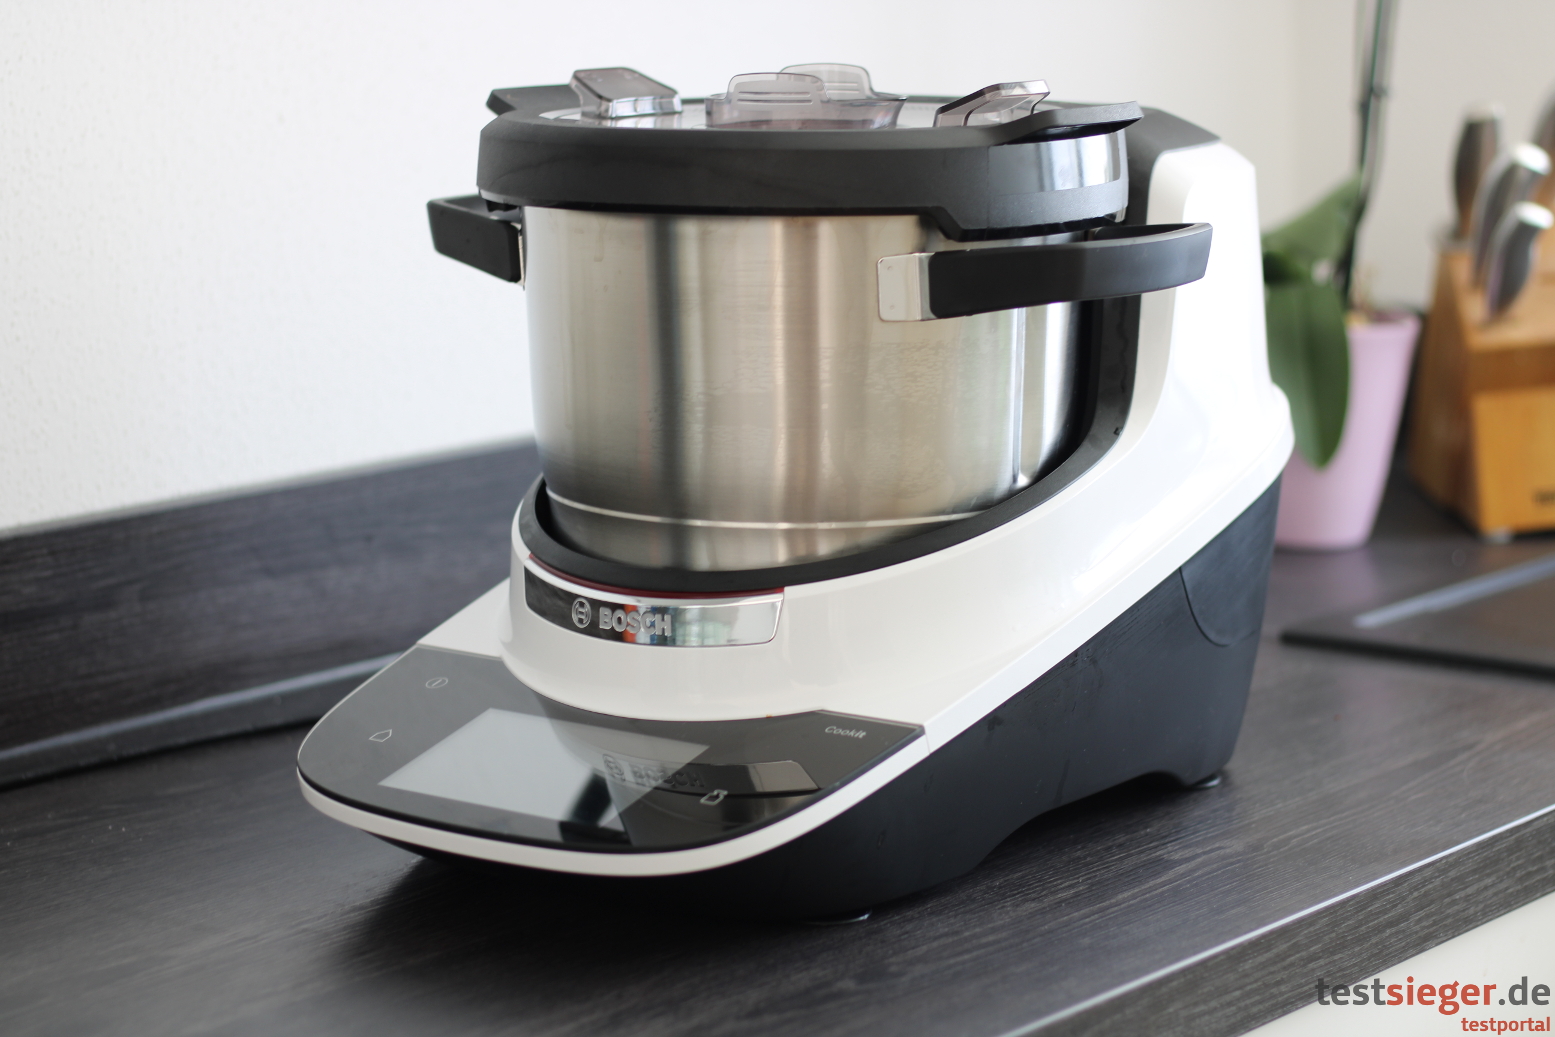 Test: Bosch Cookit Küchenmaschine - testsieger.de-Testportal